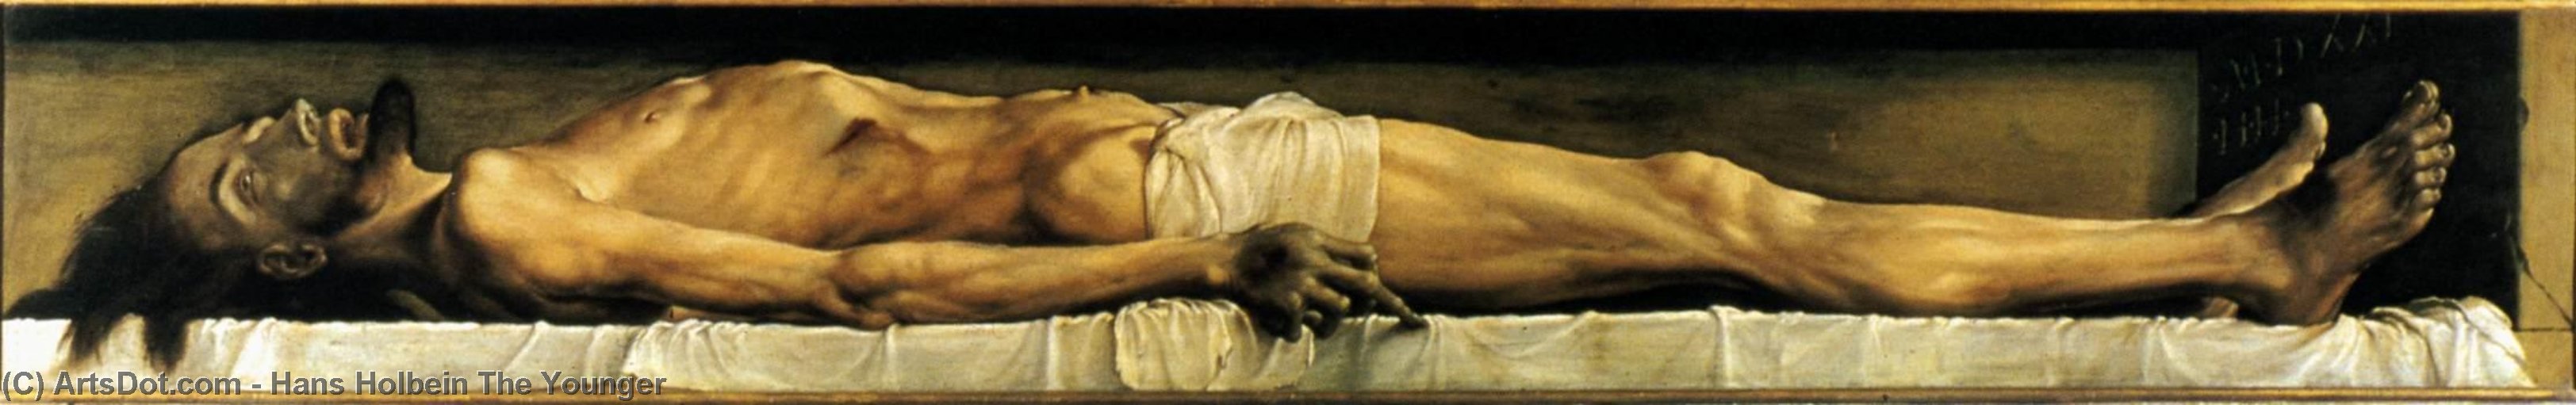 Wikioo.org - Die Enzyklopädie bildender Kunst - Malerei, Kunstwerk von Hans Holbein The Younger - der leib des toten christus im grab